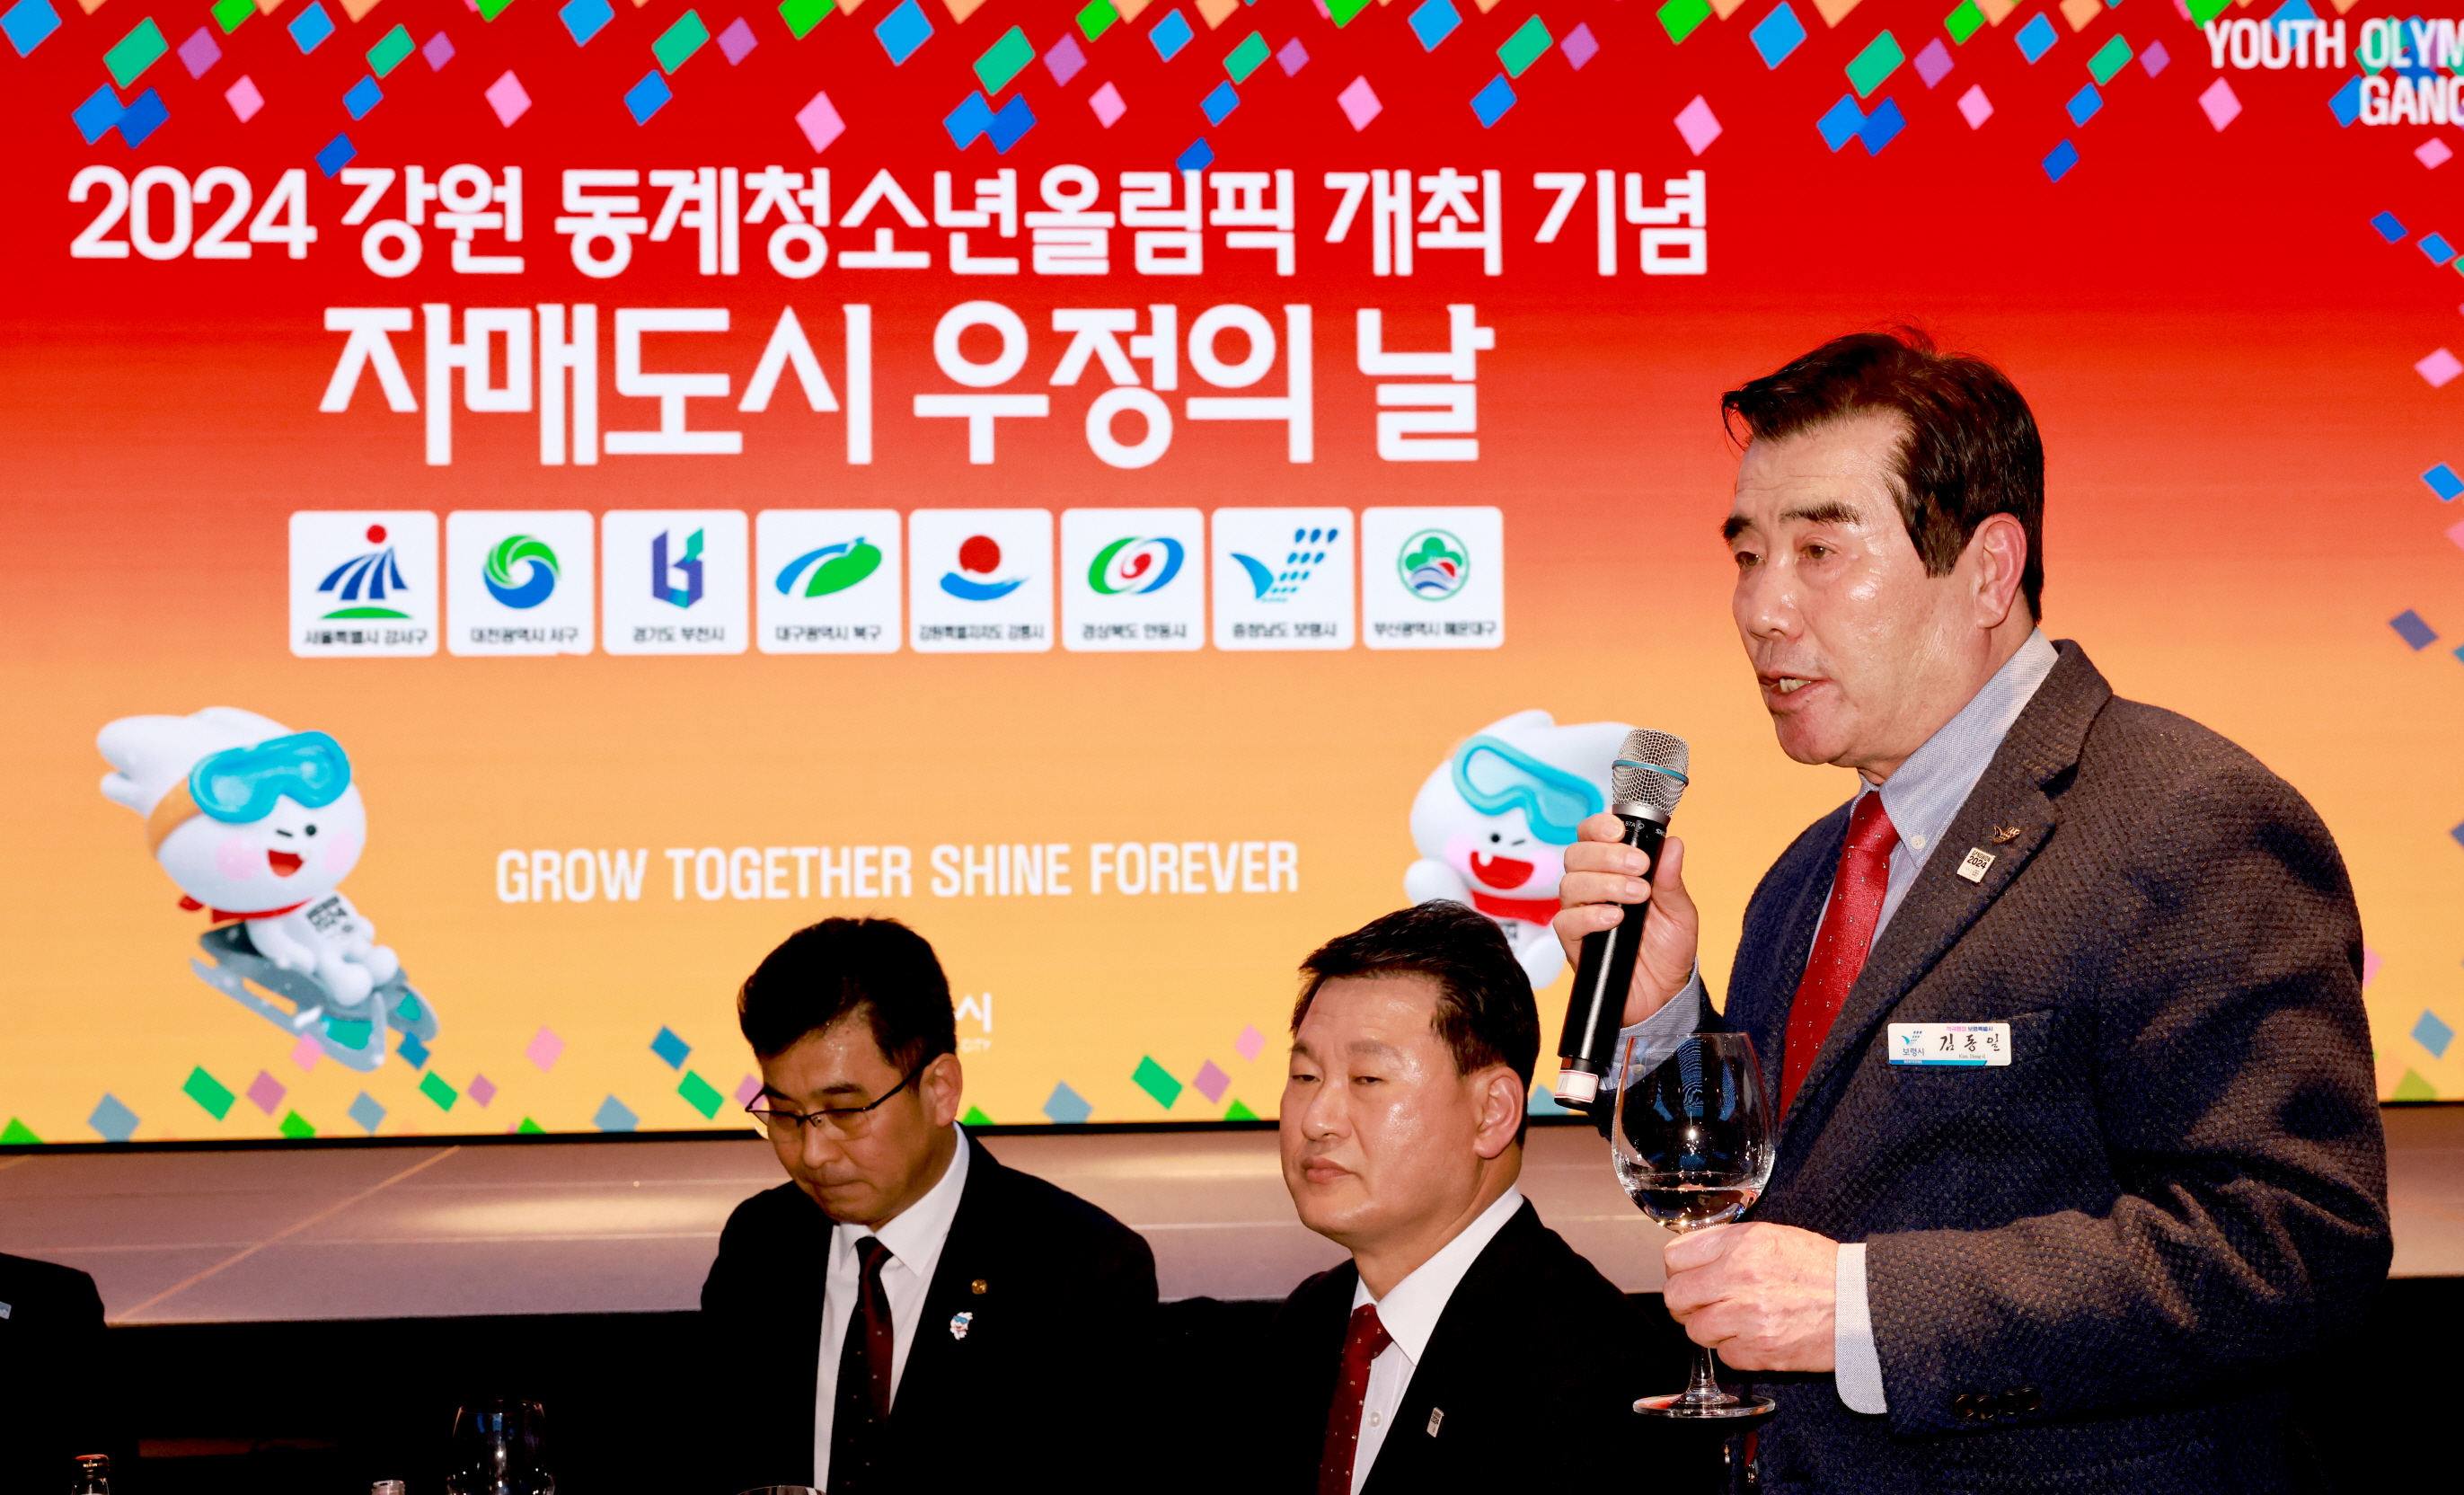 2024 강원동계청소년올림픽 개최 자매도시 우정의 날